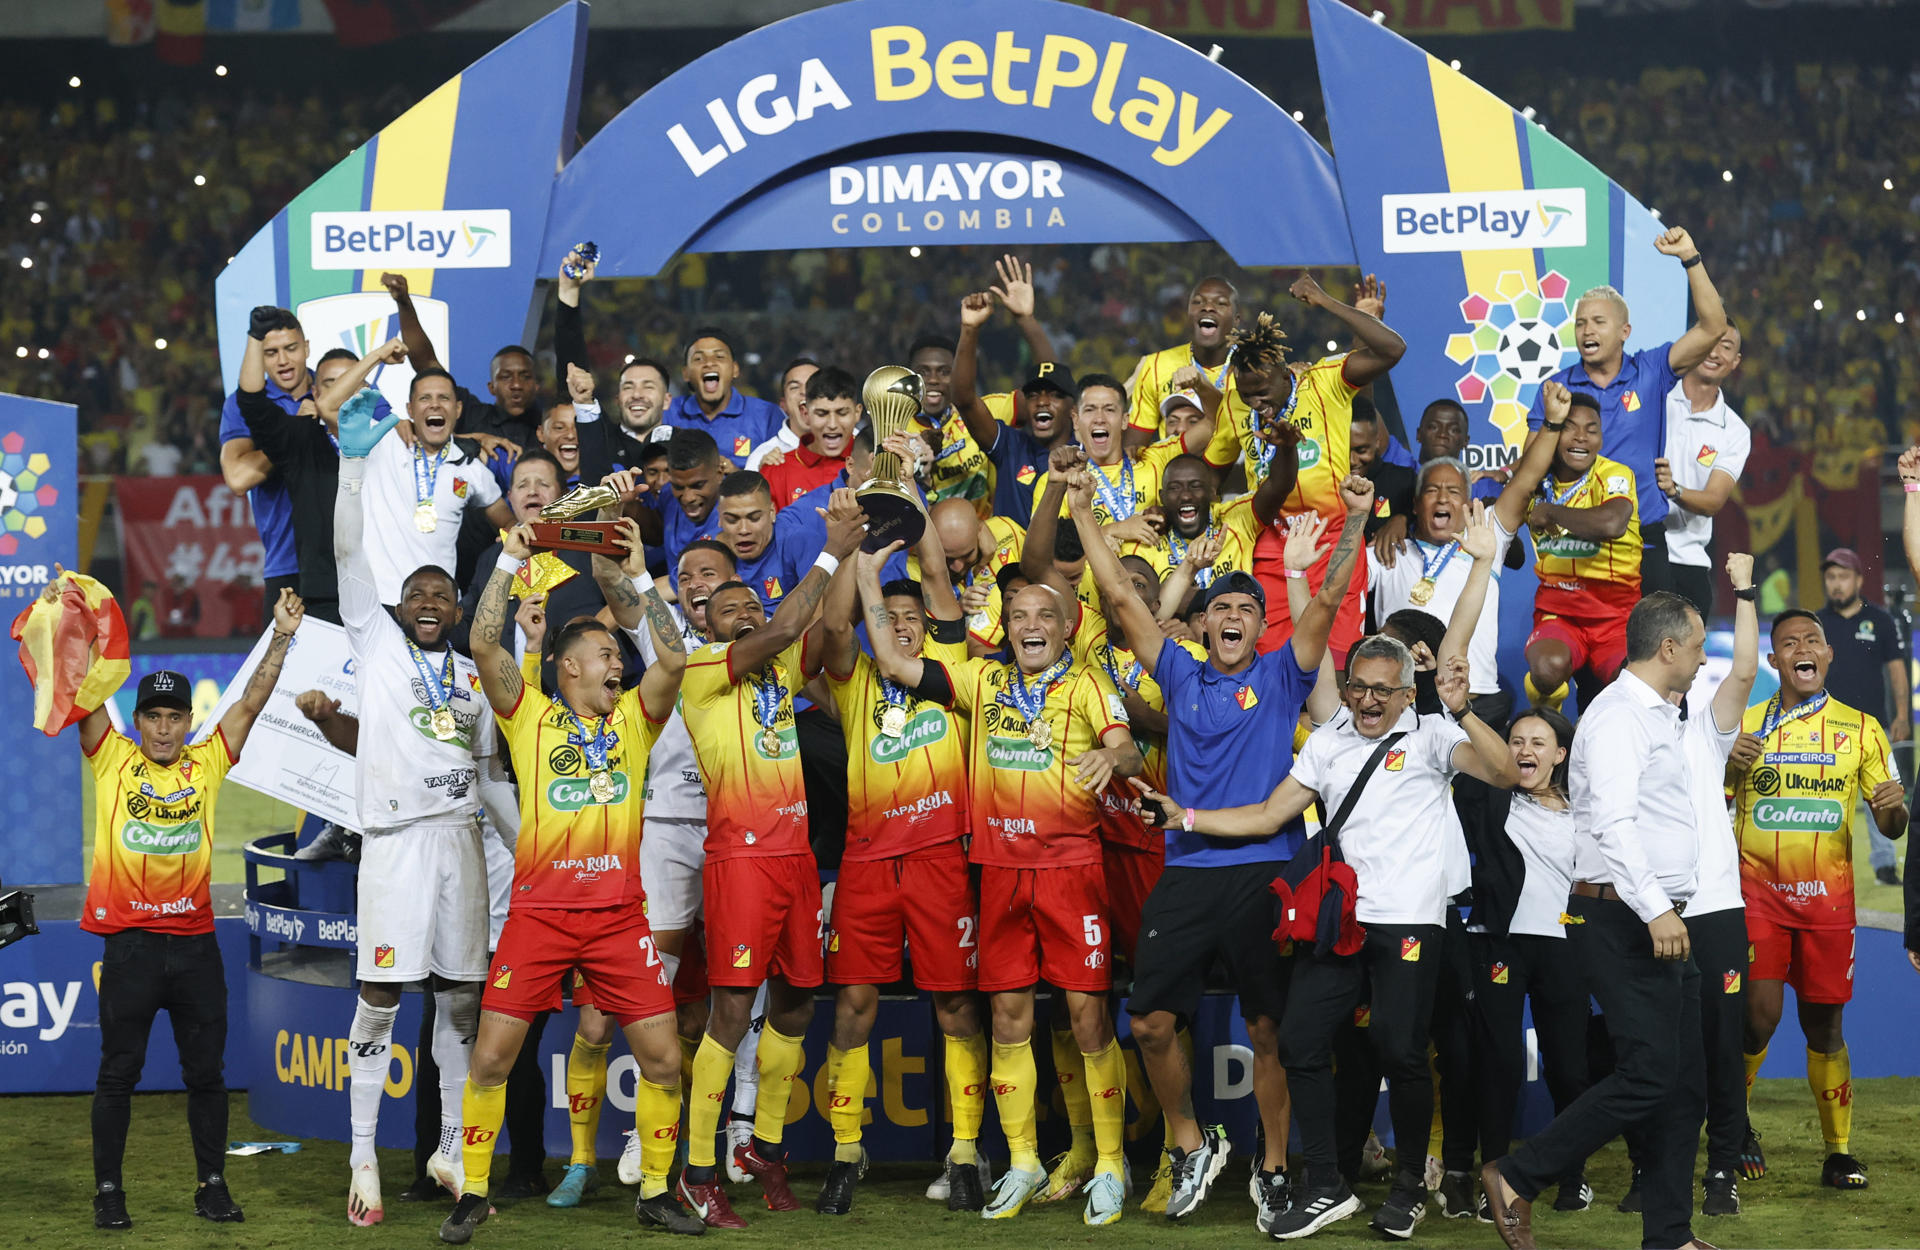 Jugadores del Pereira celebran luego de ganar la final del fútbol colombiano. Foto de archivo. EFE/ Mauricio Dueñas Castañeda